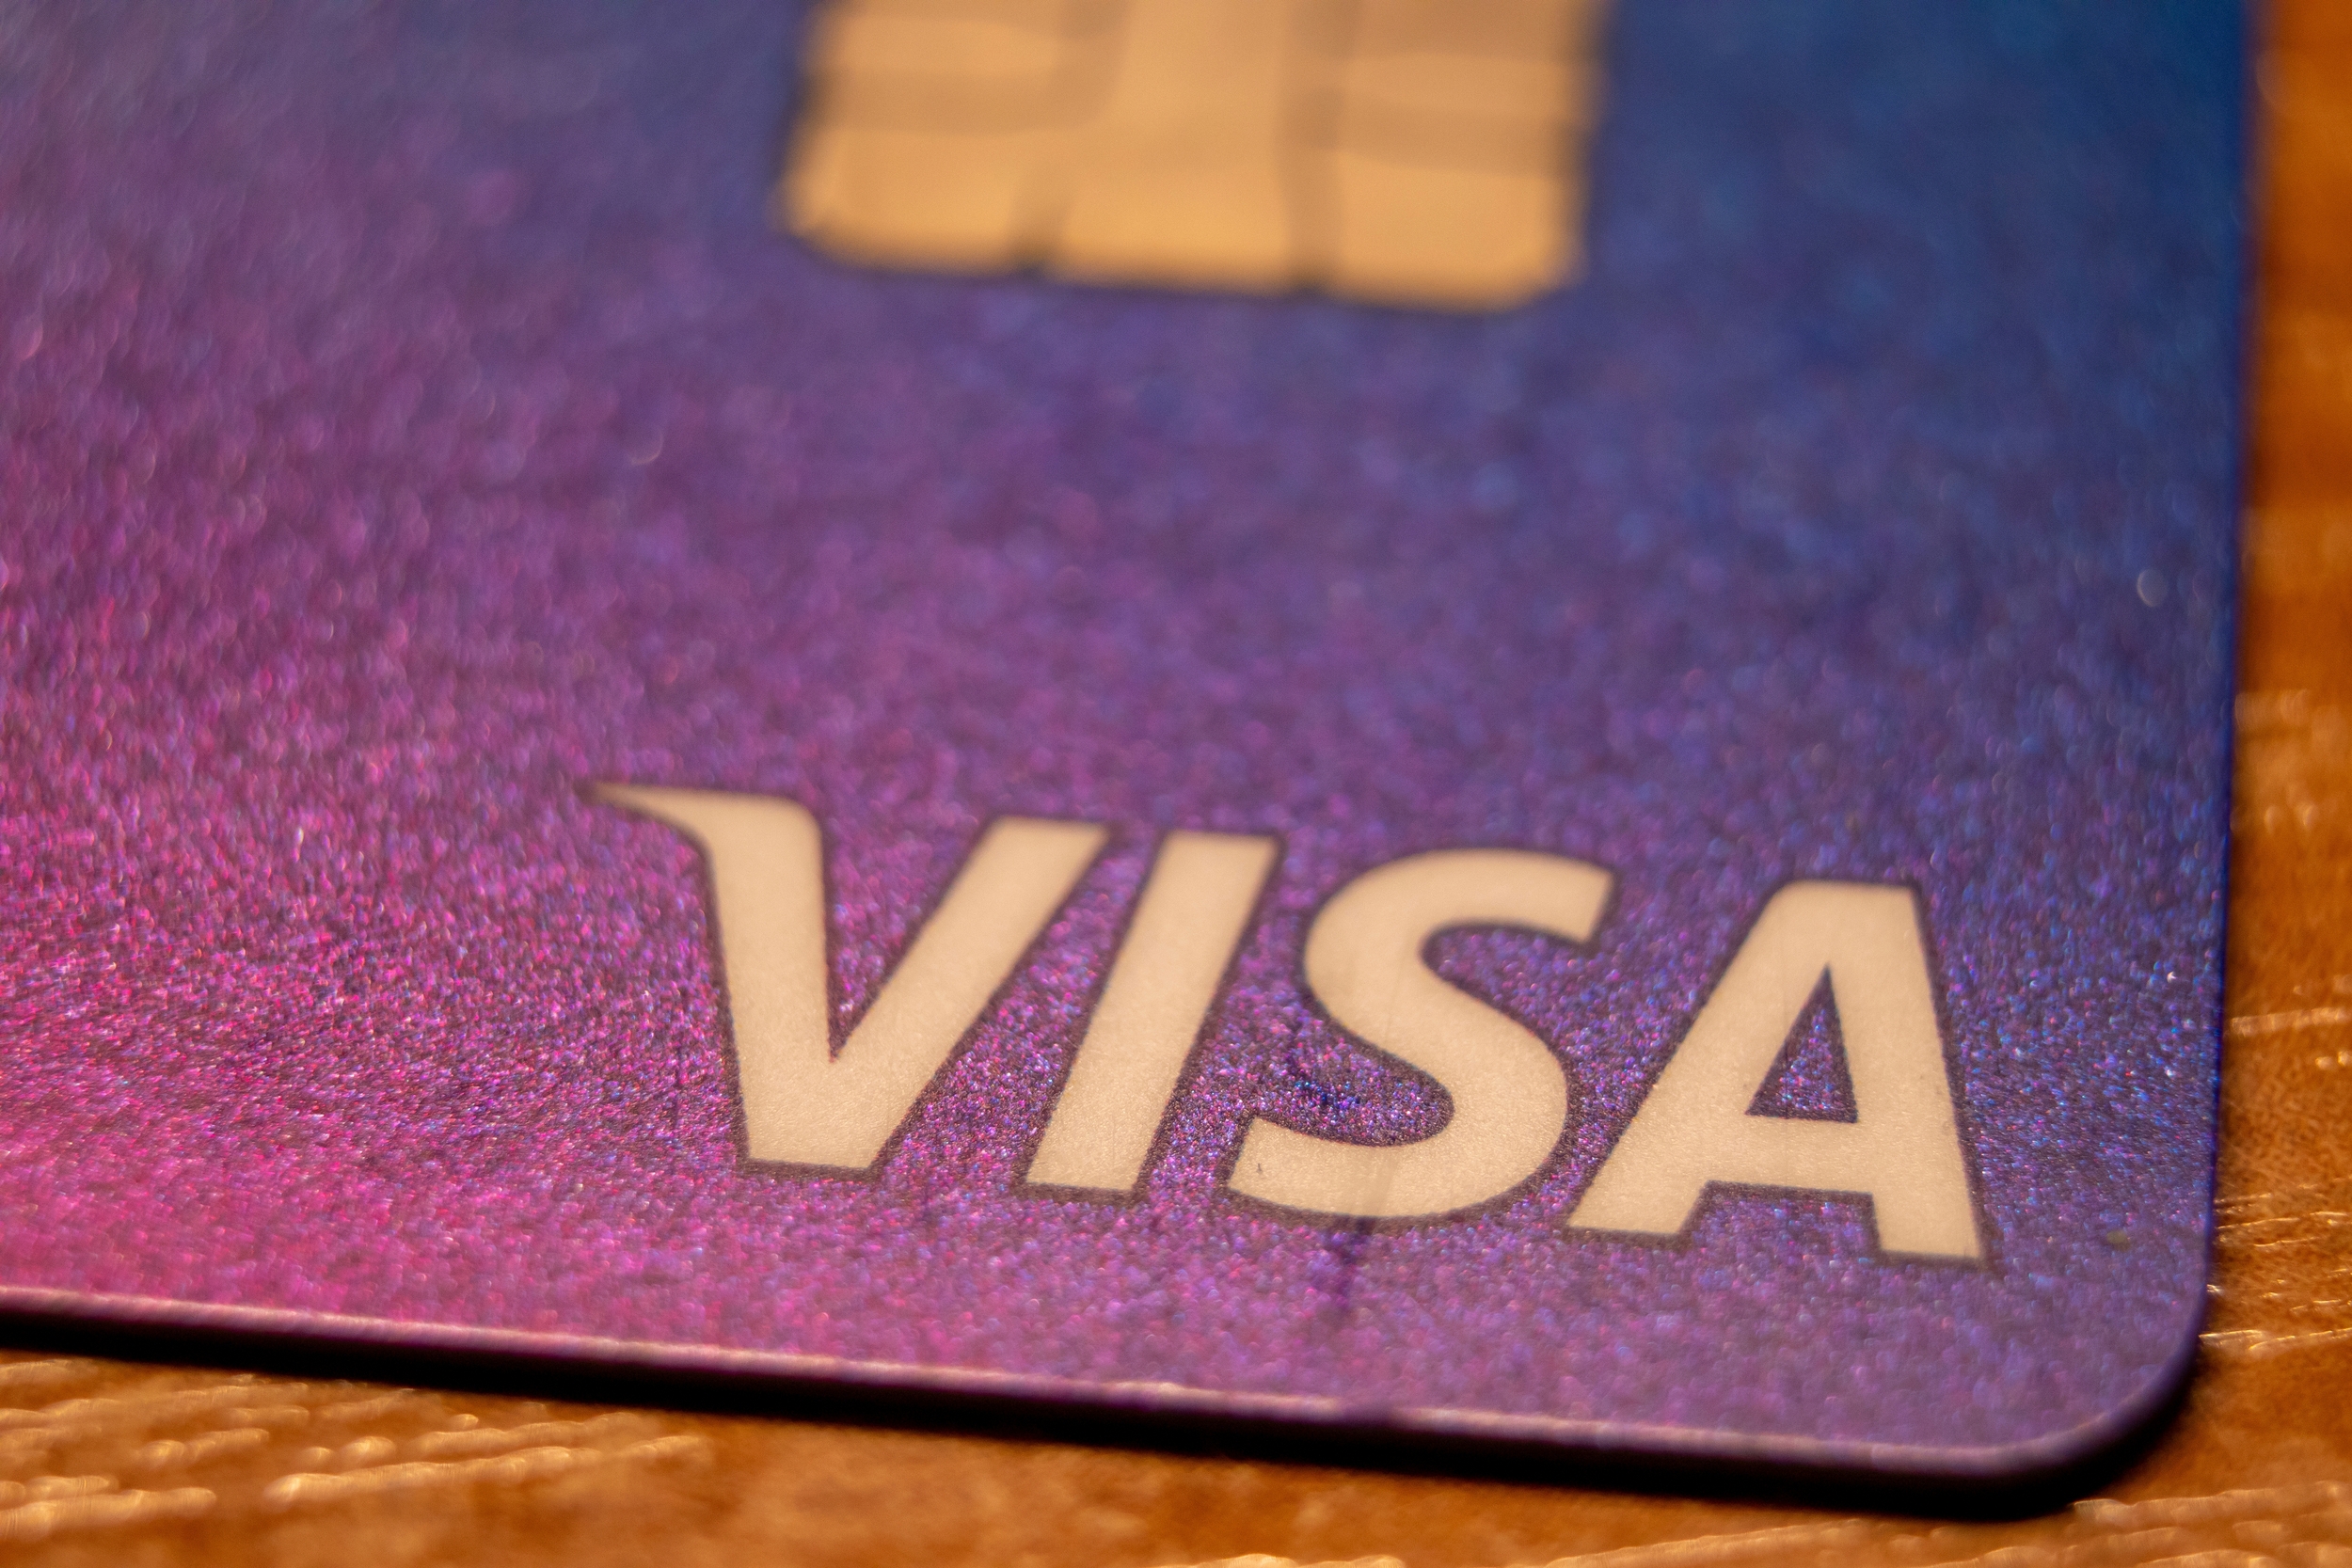 Visa n'a pas assez bien protégé des arnaques ses cartes-cadeaux, le géant du paiement est trainé en justice !